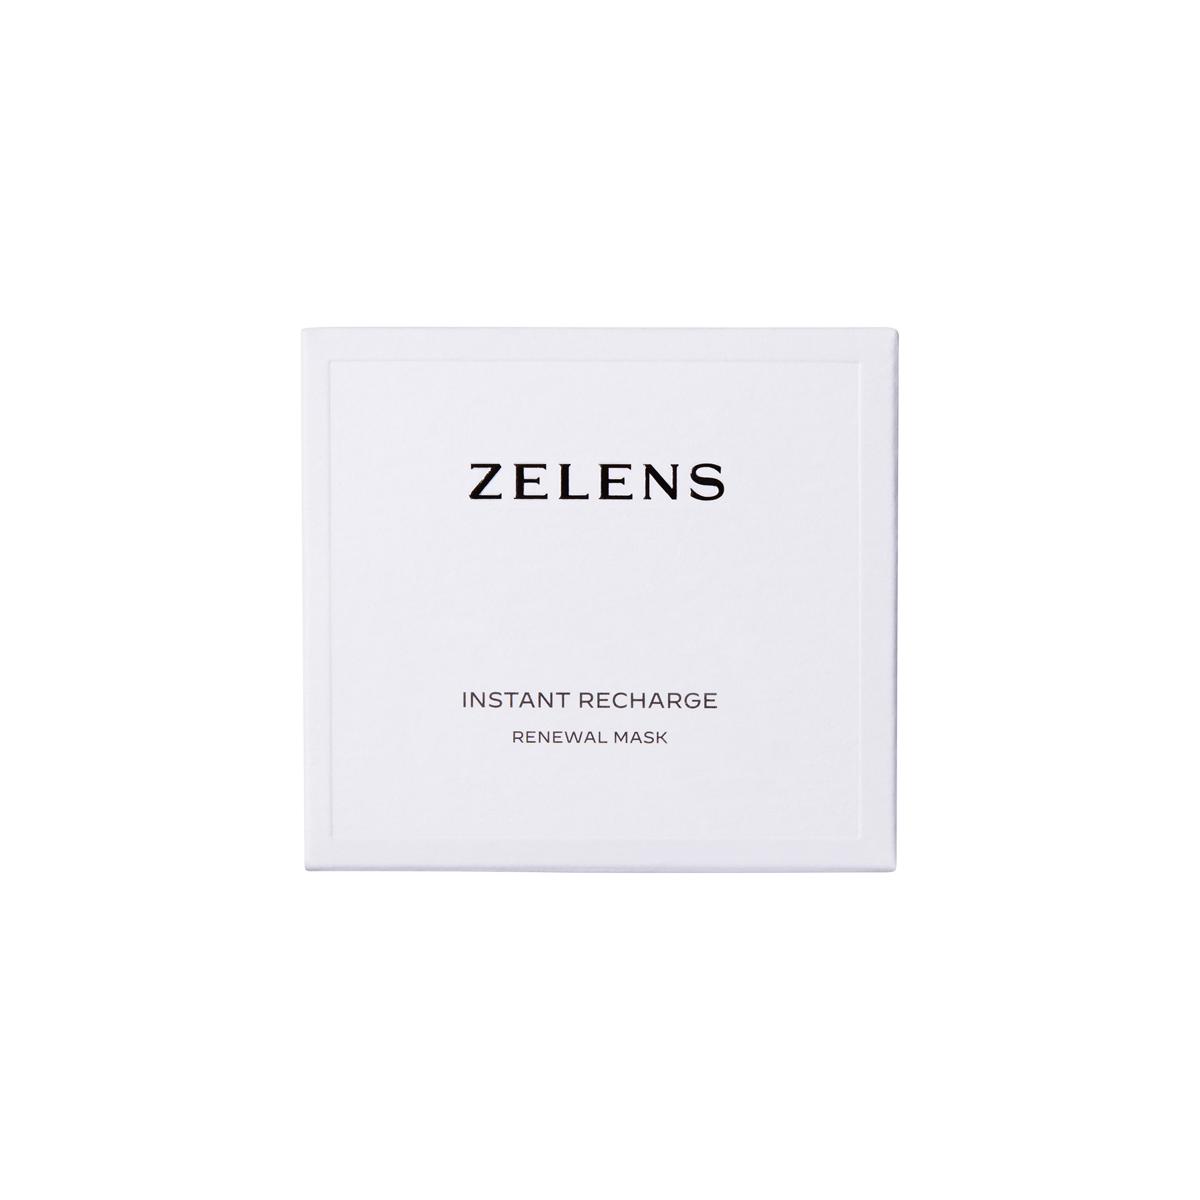 Zelens - Instant Recharge Renewal Mask